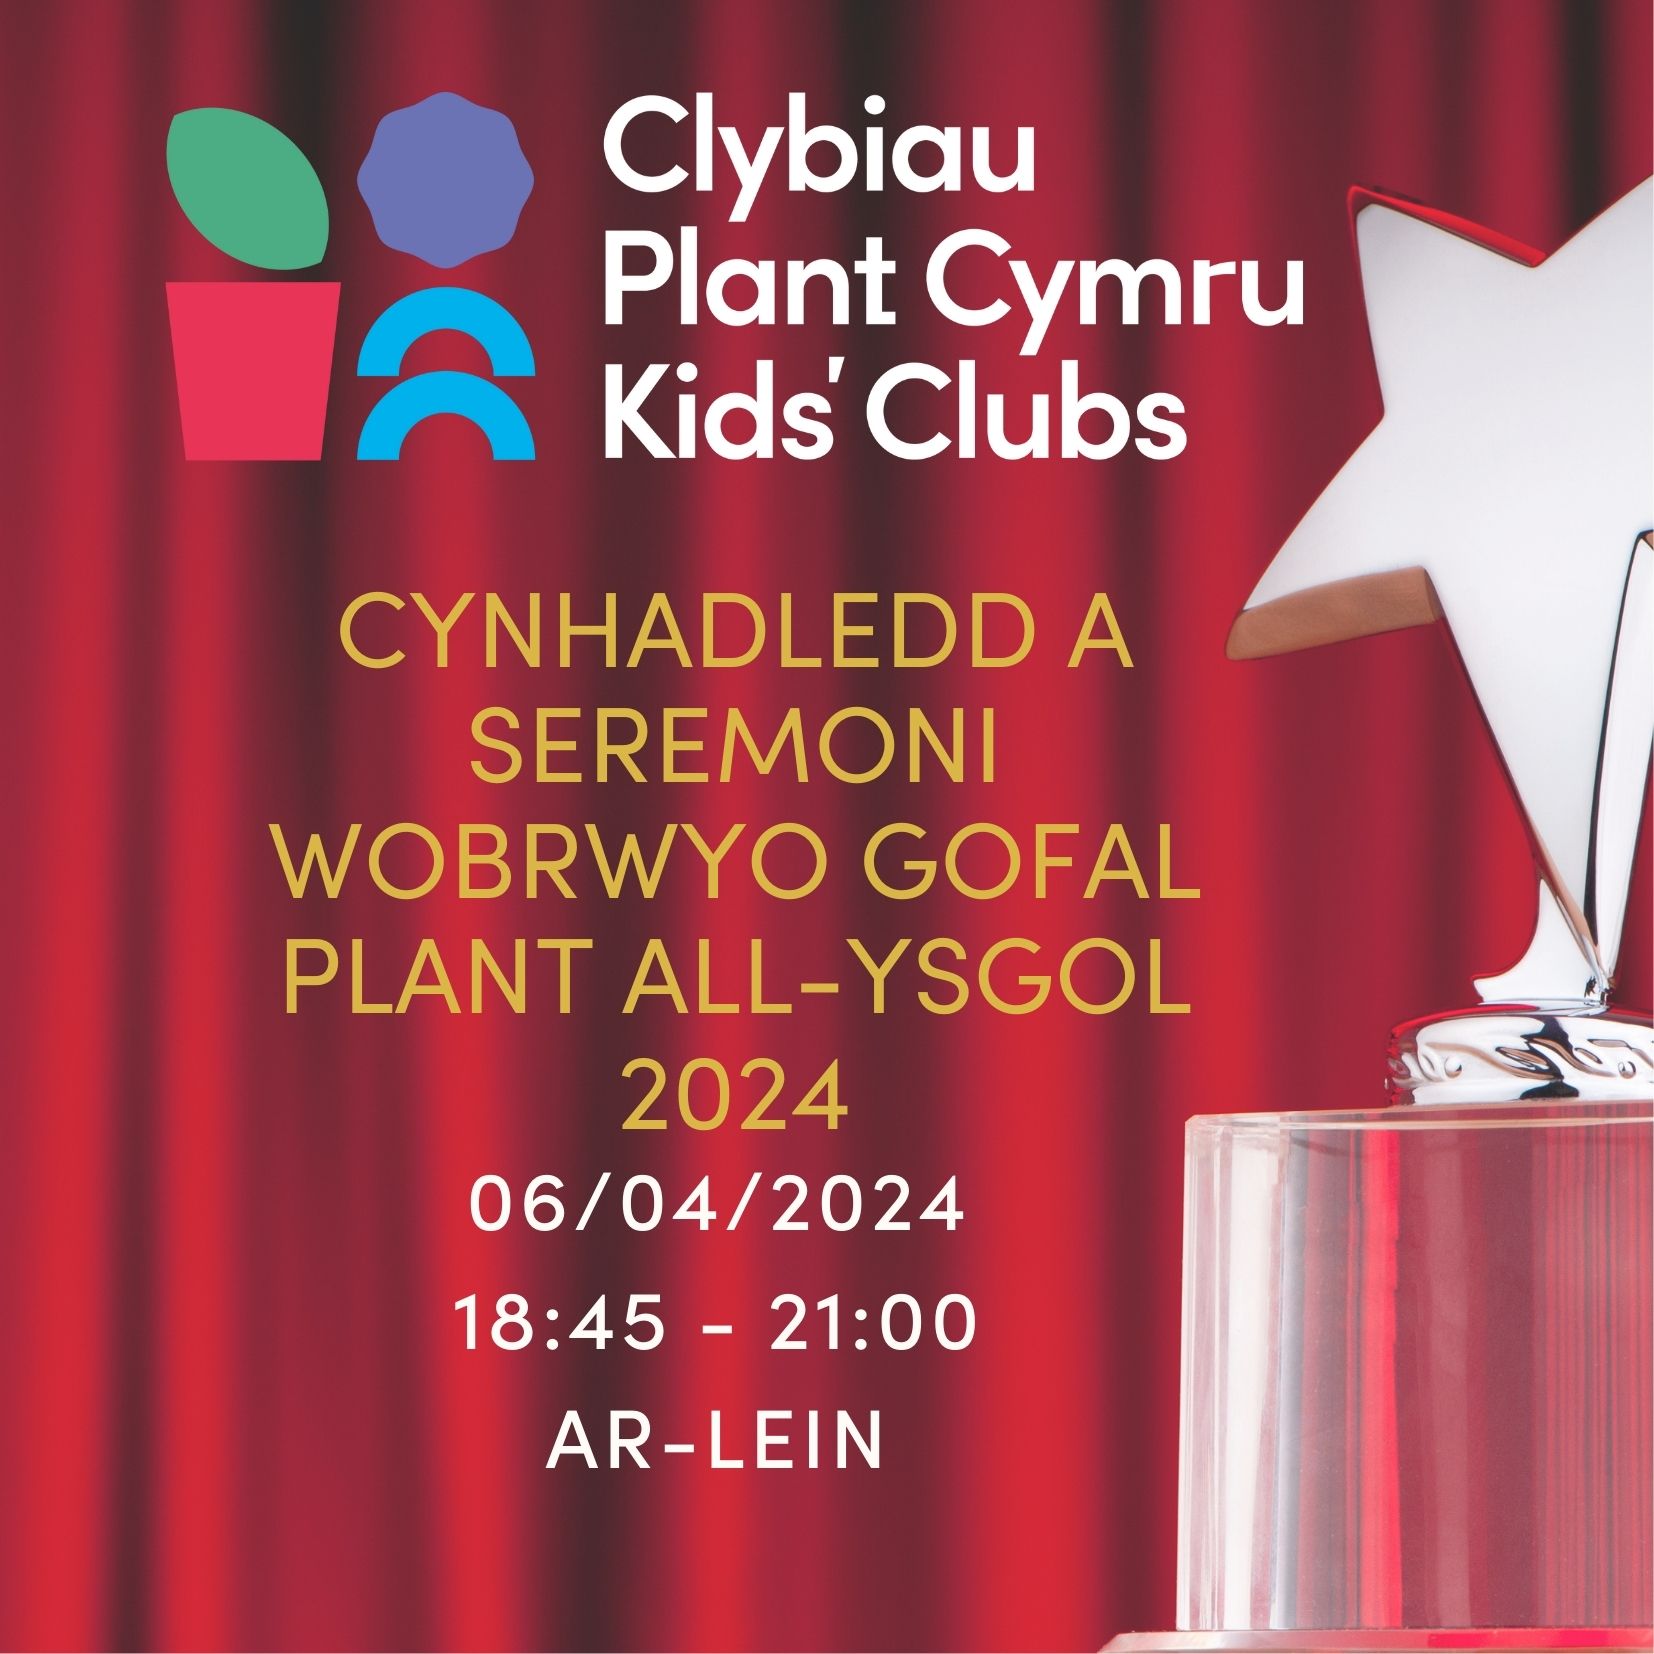 Cynhadledd a Seremoni Wobrwyo Gofal Plant All-Ysgol 2024 Clybiau Plant Cymru Kids’ Clubs